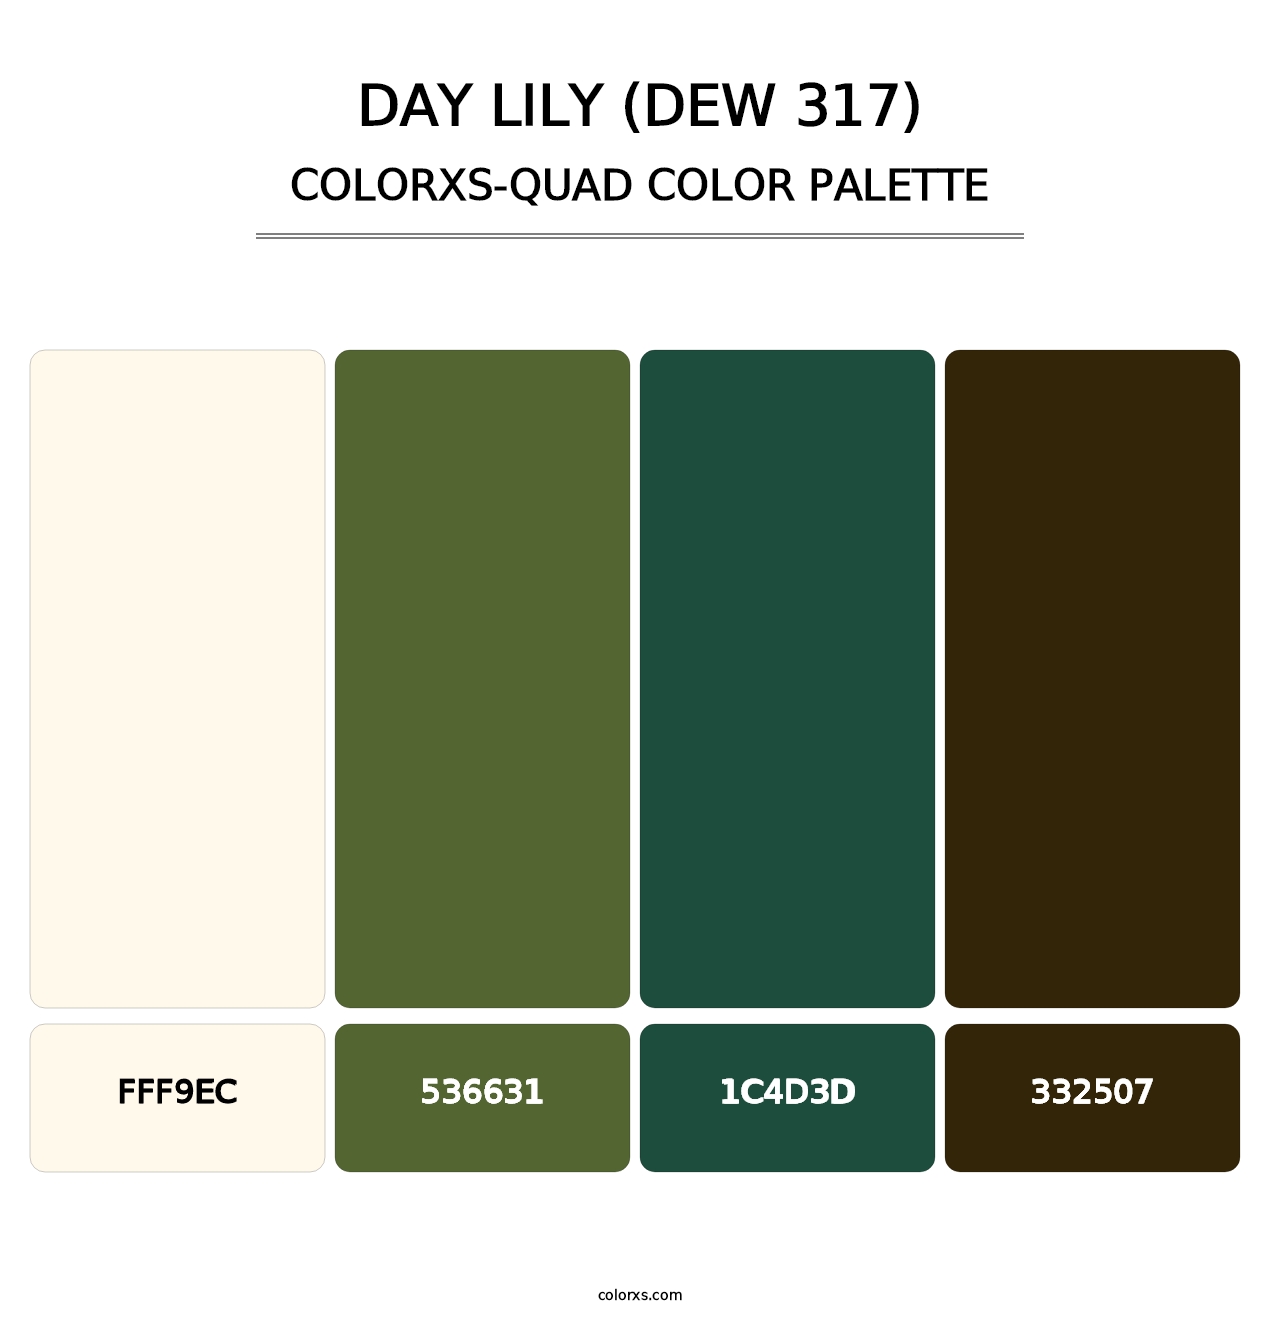 Day Lily (DEW 317) - Colorxs Quad Palette